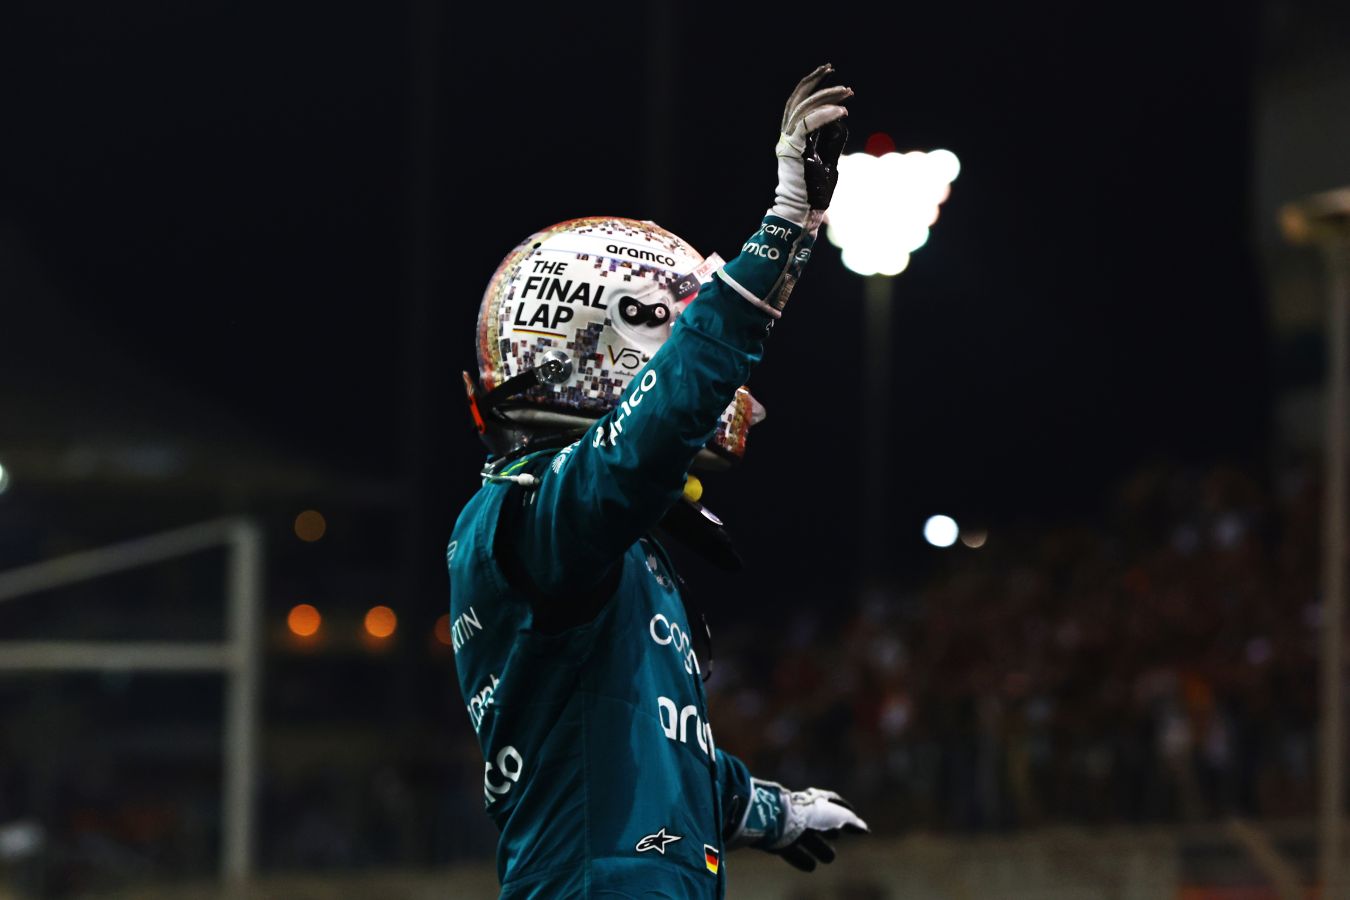 Феттель признан гонщиком дня на прощальном для себя Гран-при, который прошёл в Абу-Даби